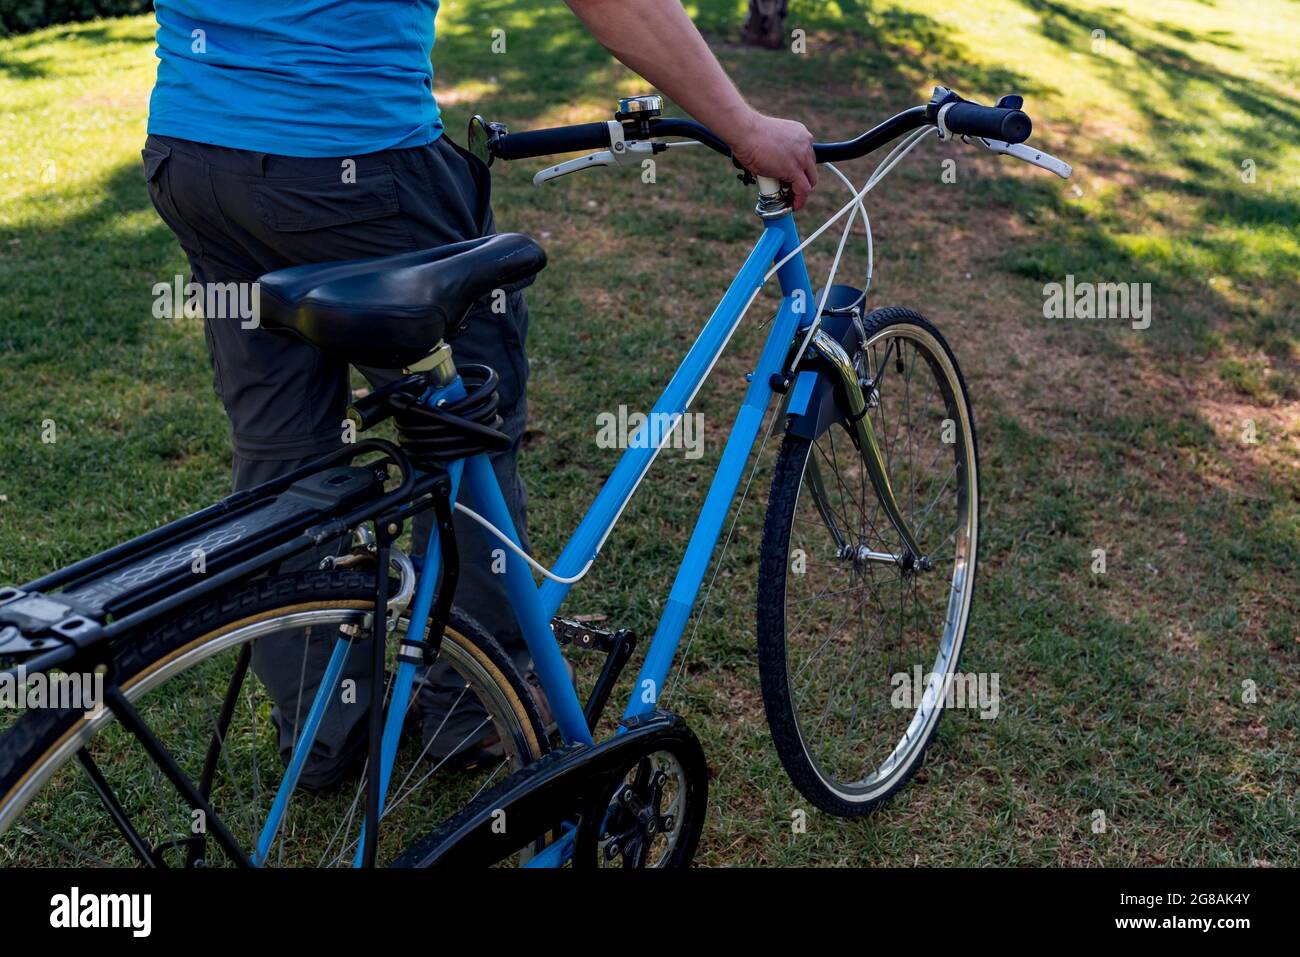 Homme méconnaissable marchant dans le parc avec son vélo Banque D'Images